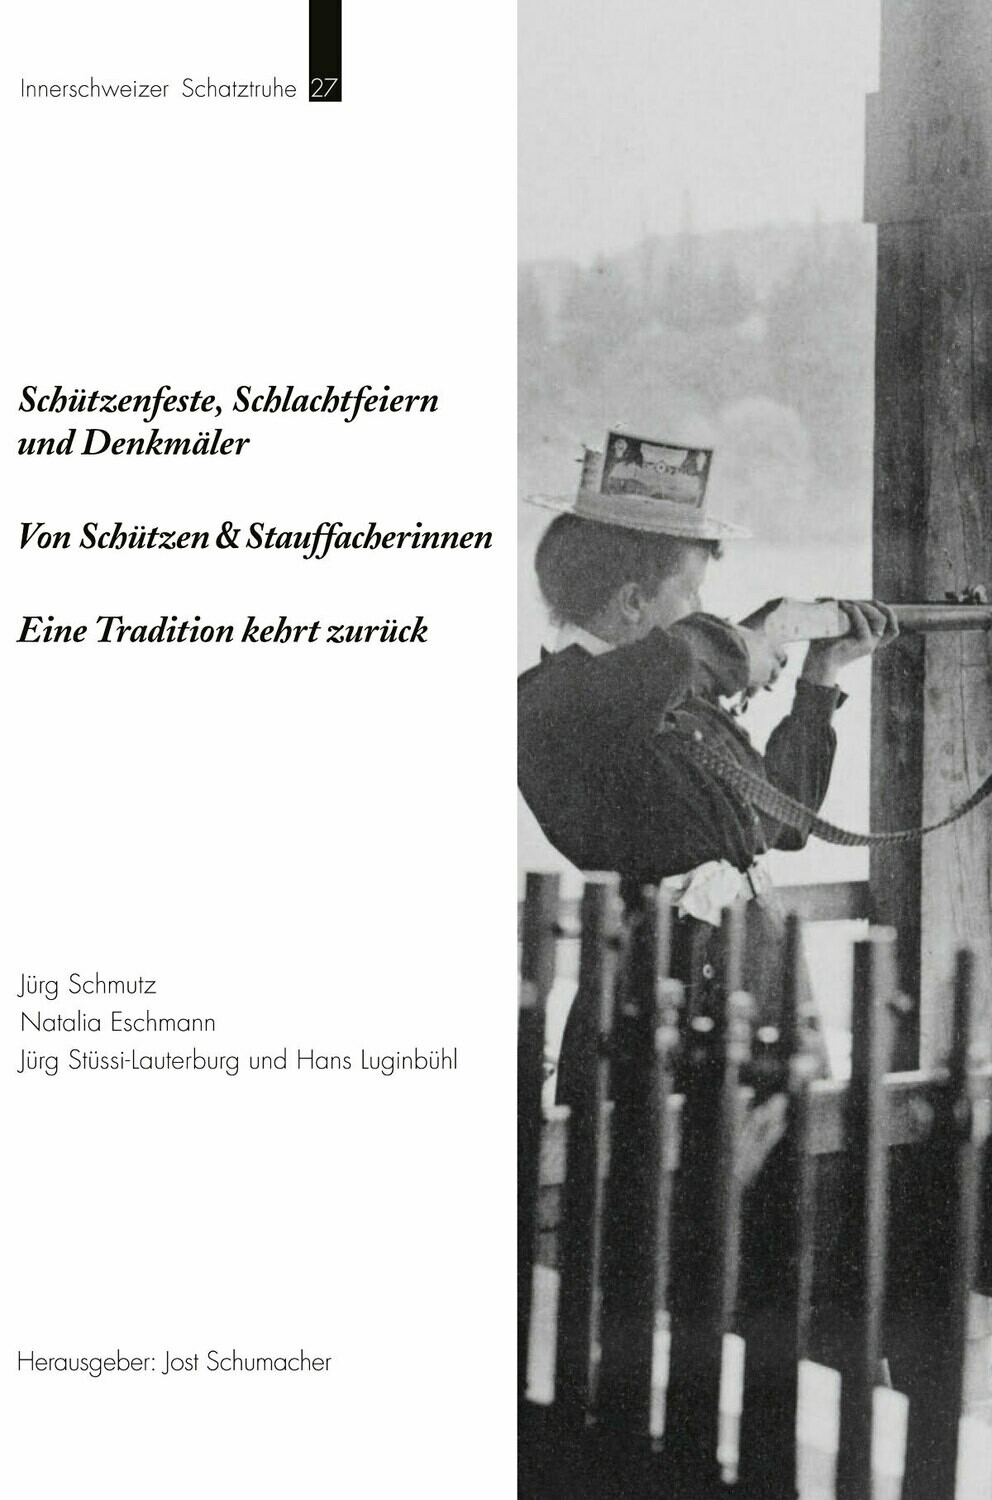 Buch/Festschrift "Eine Tradition kehrt zurück"